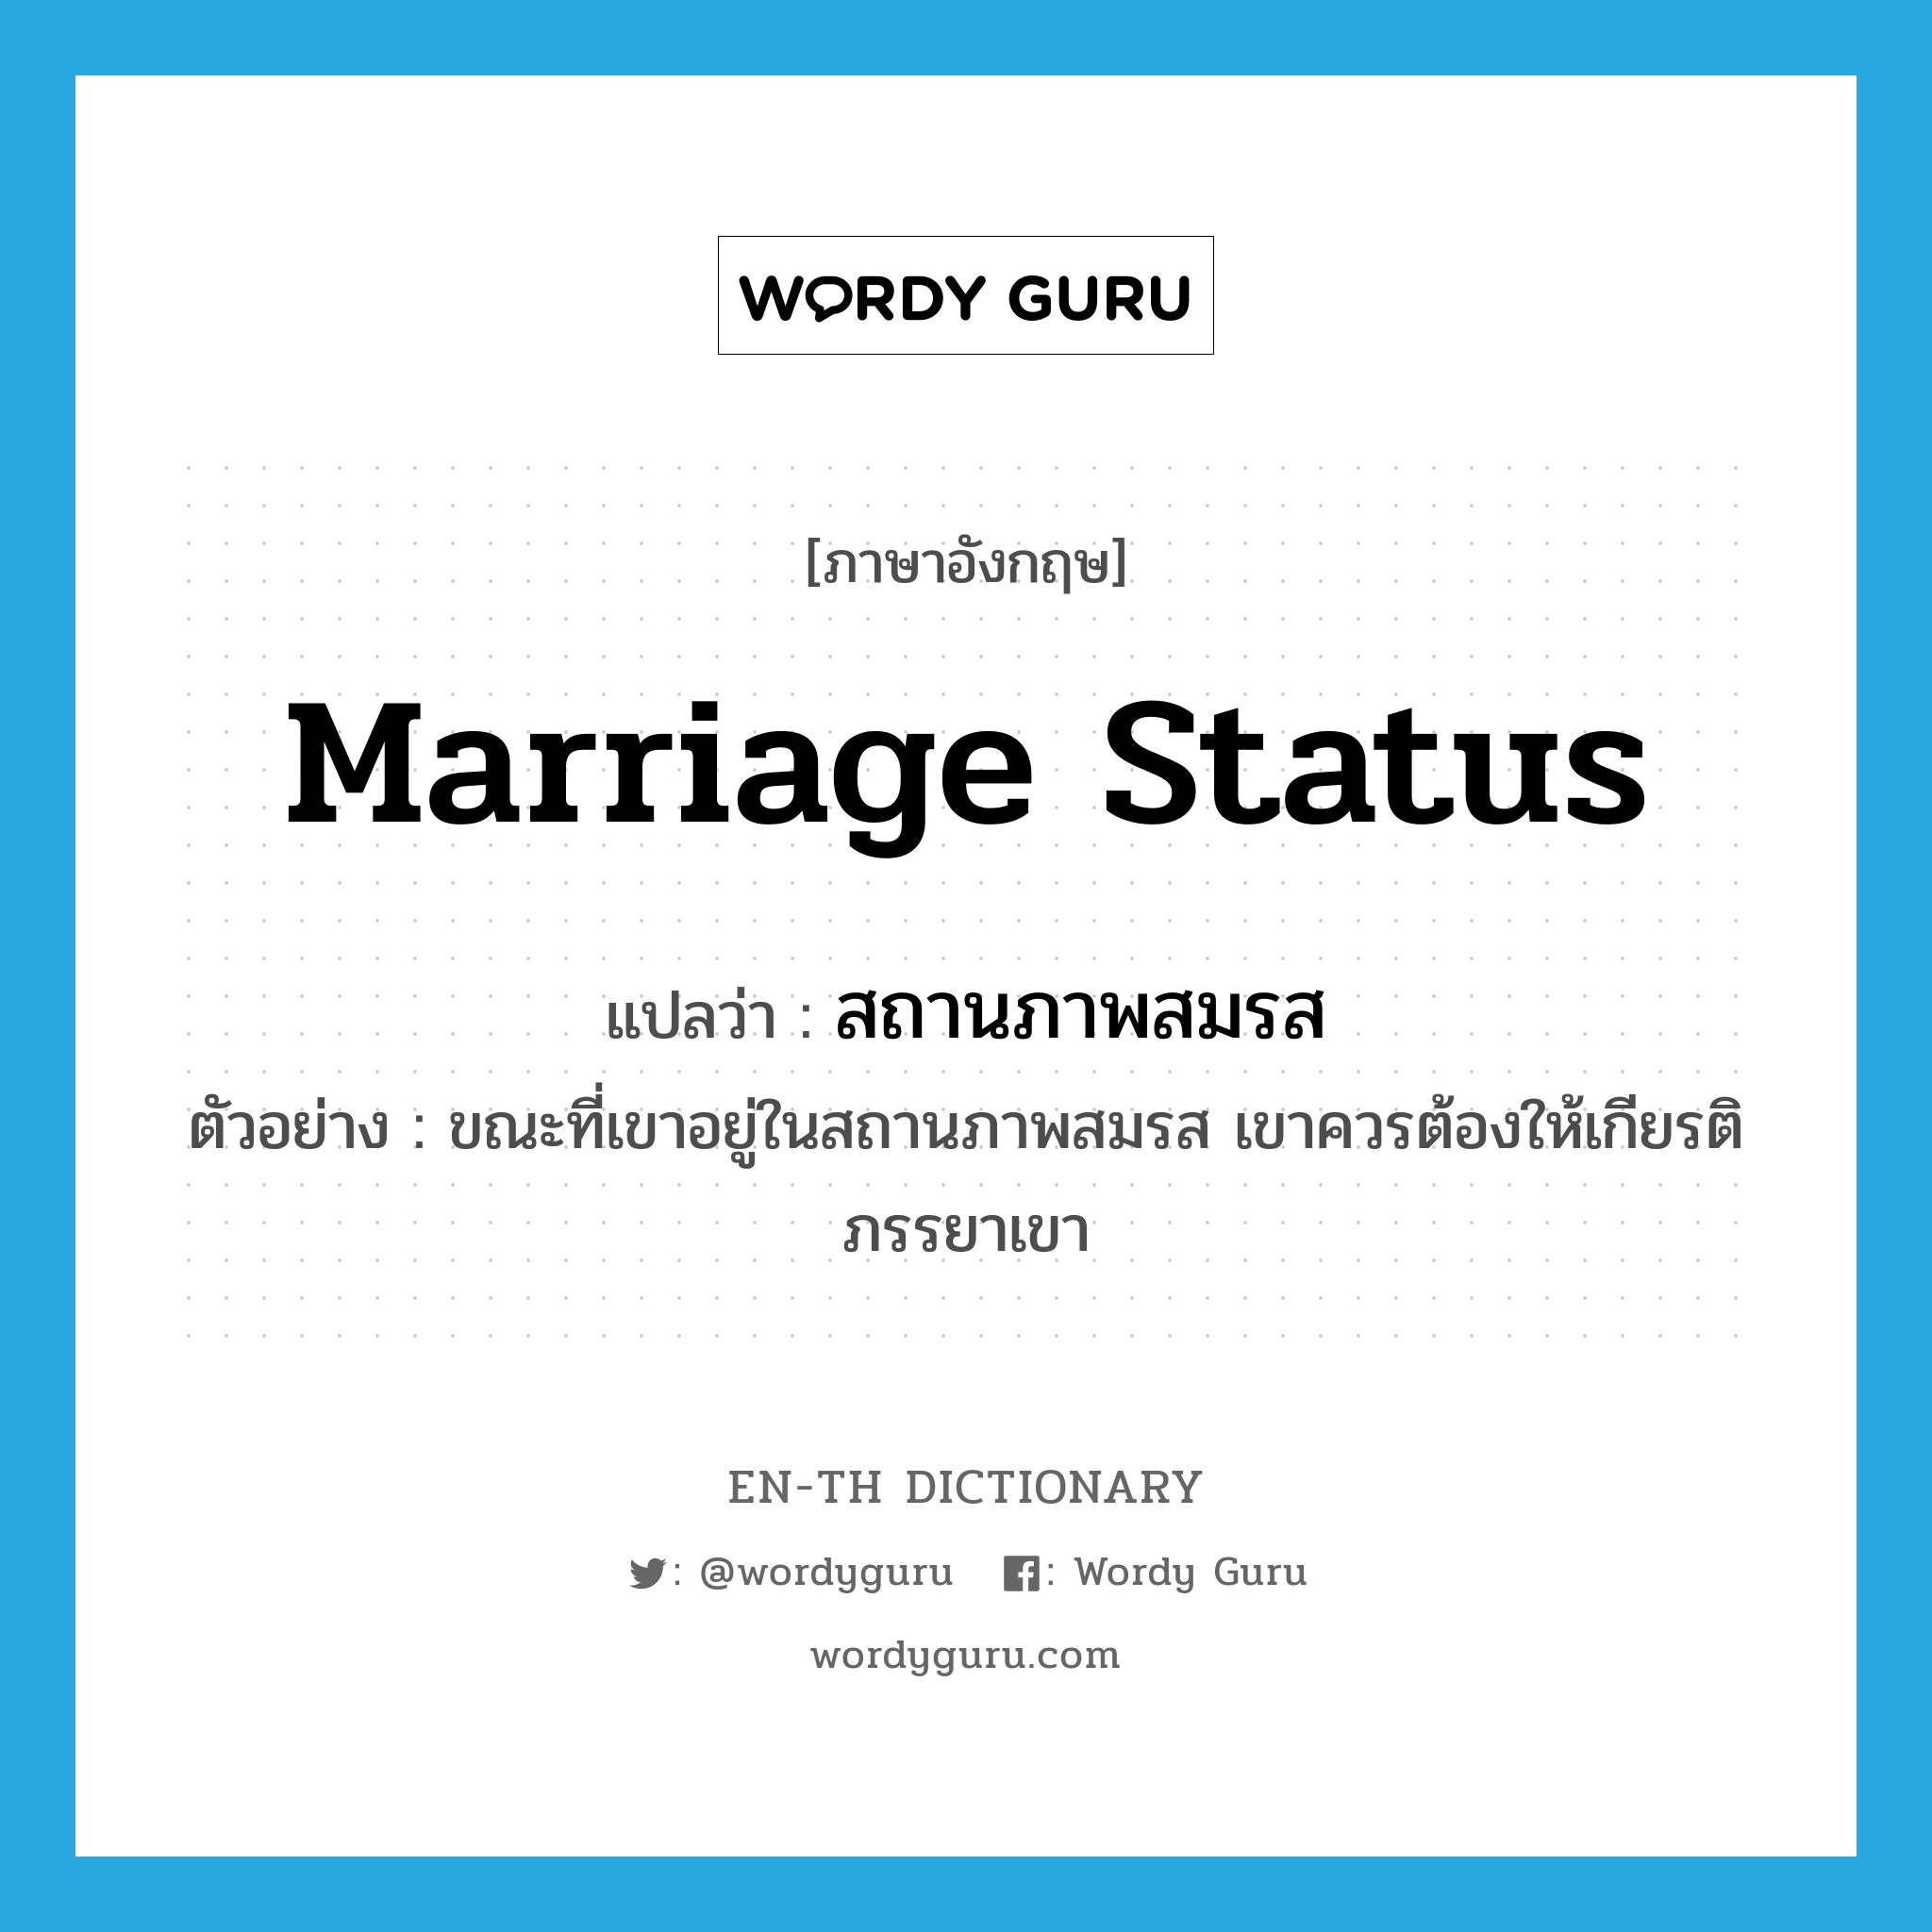 marriage status แปลว่า?, คำศัพท์ภาษาอังกฤษ marriage status แปลว่า สถานภาพสมรส ประเภท N ตัวอย่าง ขณะที่เขาอยู่ในสถานภาพสมรส เขาควรต้องให้เกียรติภรรยาเขา หมวด N